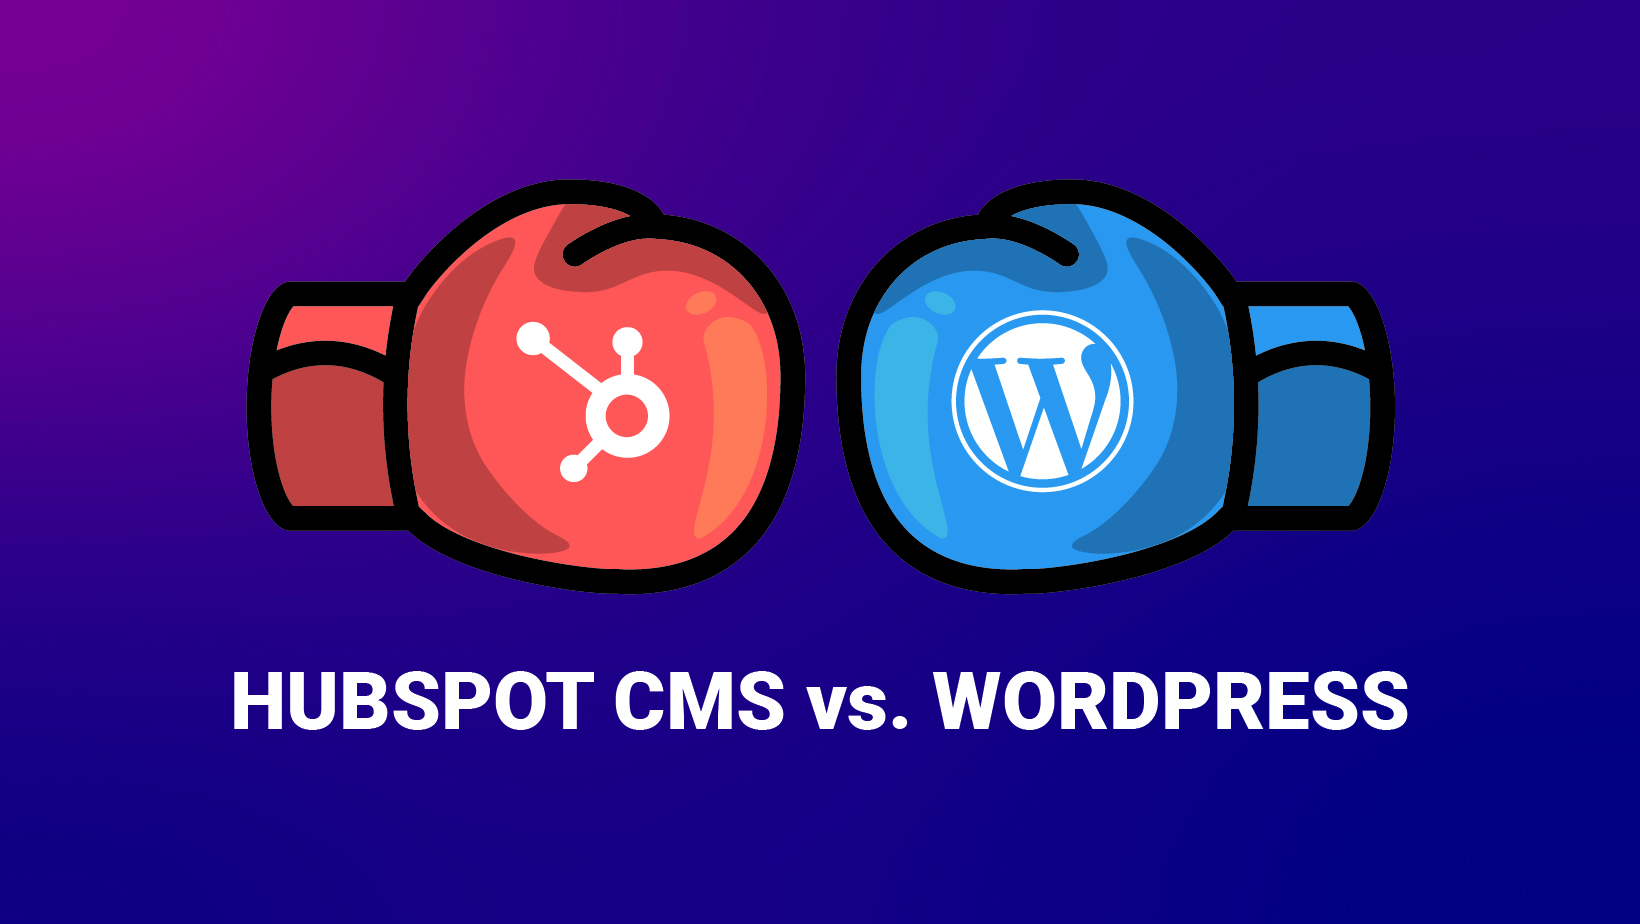 HubSpot CMS vs. Wordpress